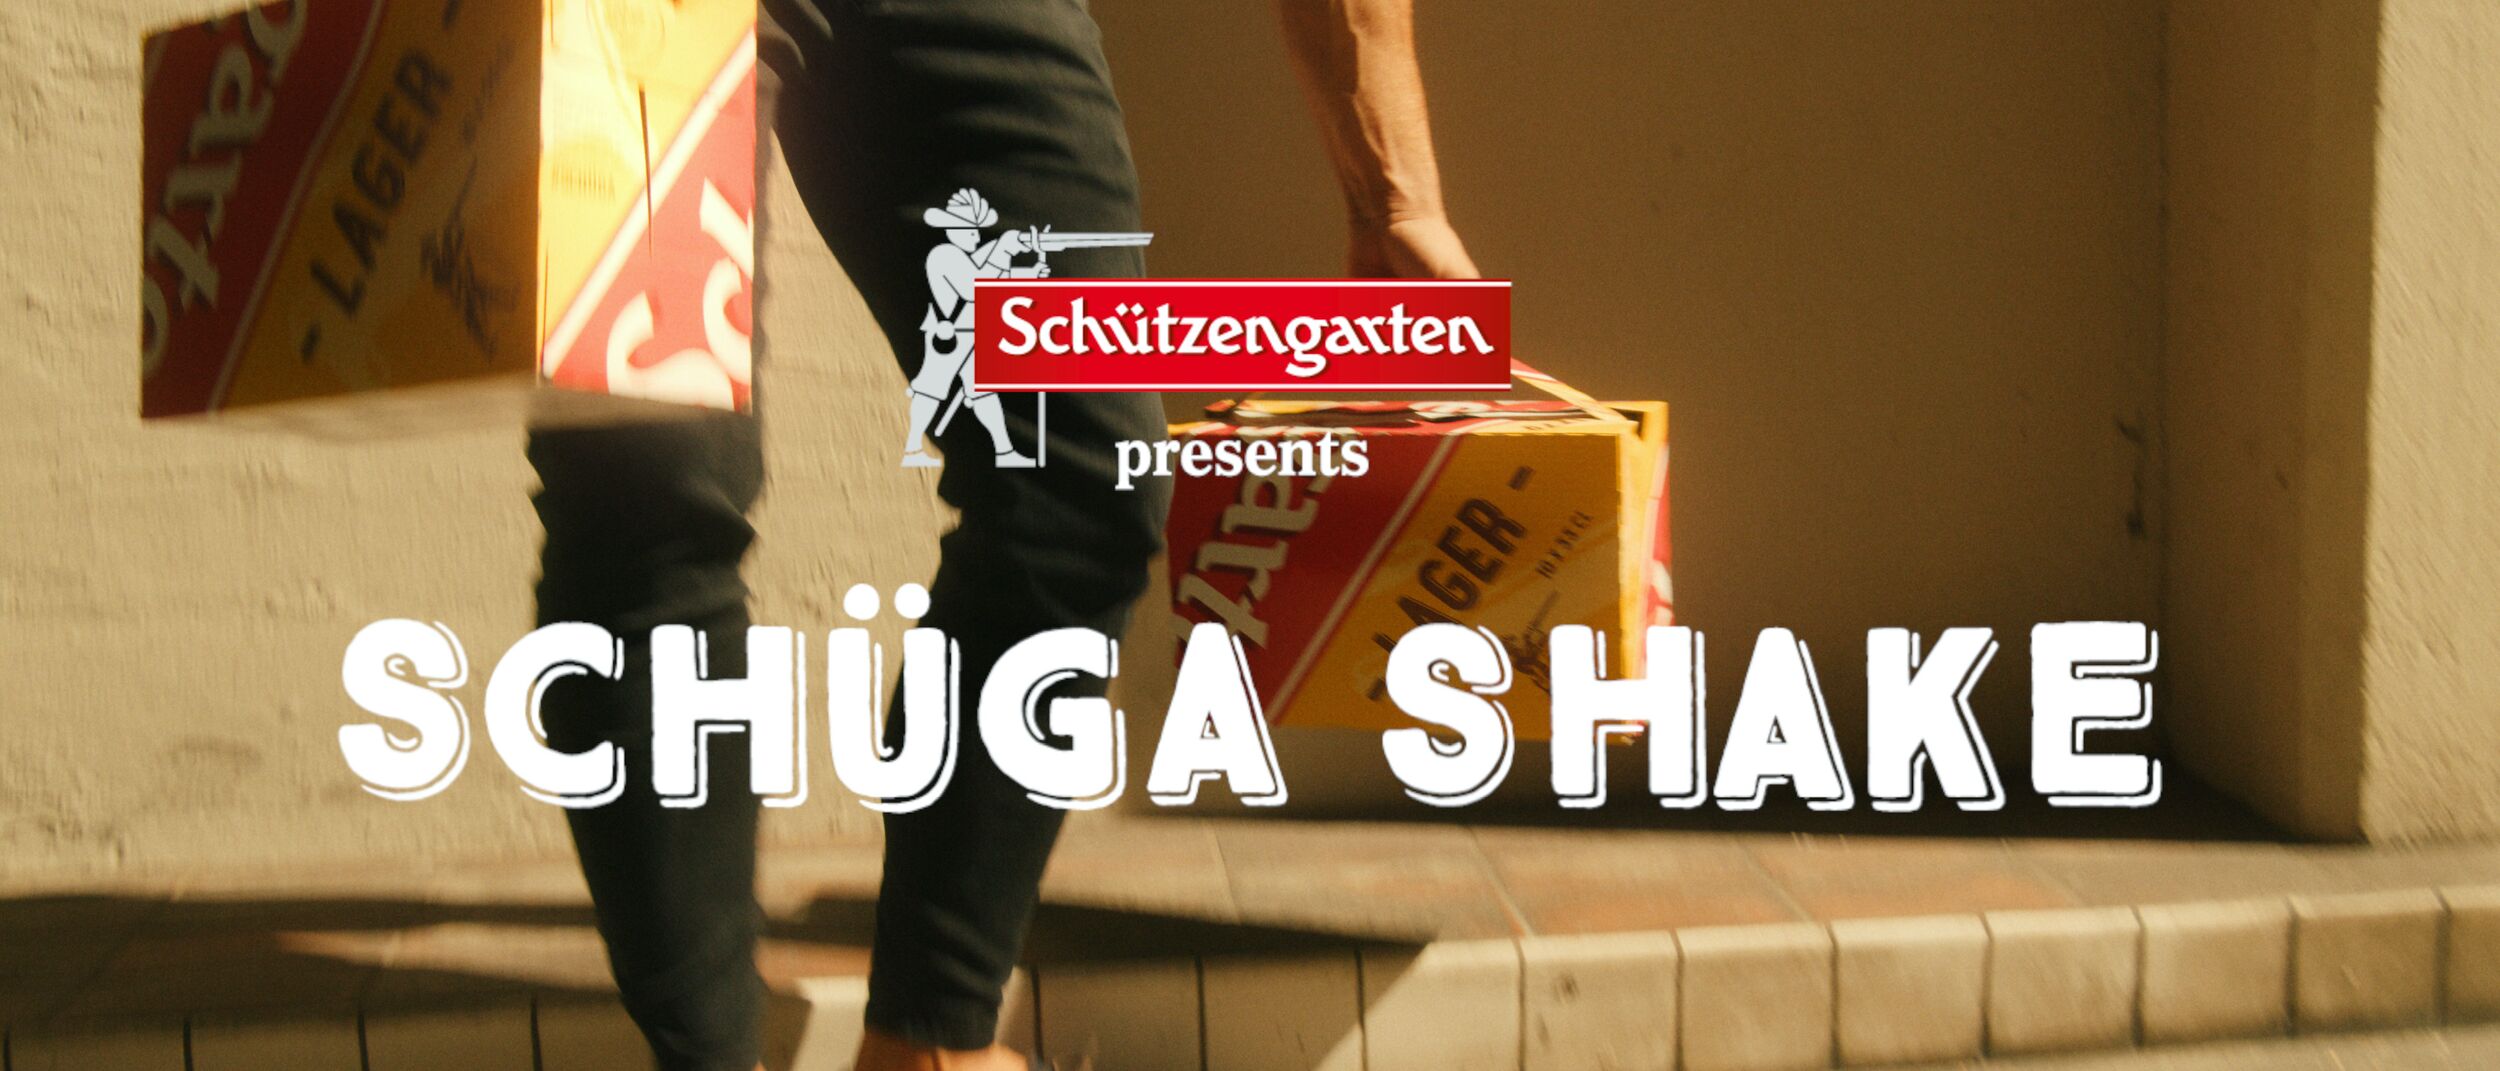 Schützengarten – Bewegtbild – Schüga Shake – Key Visual